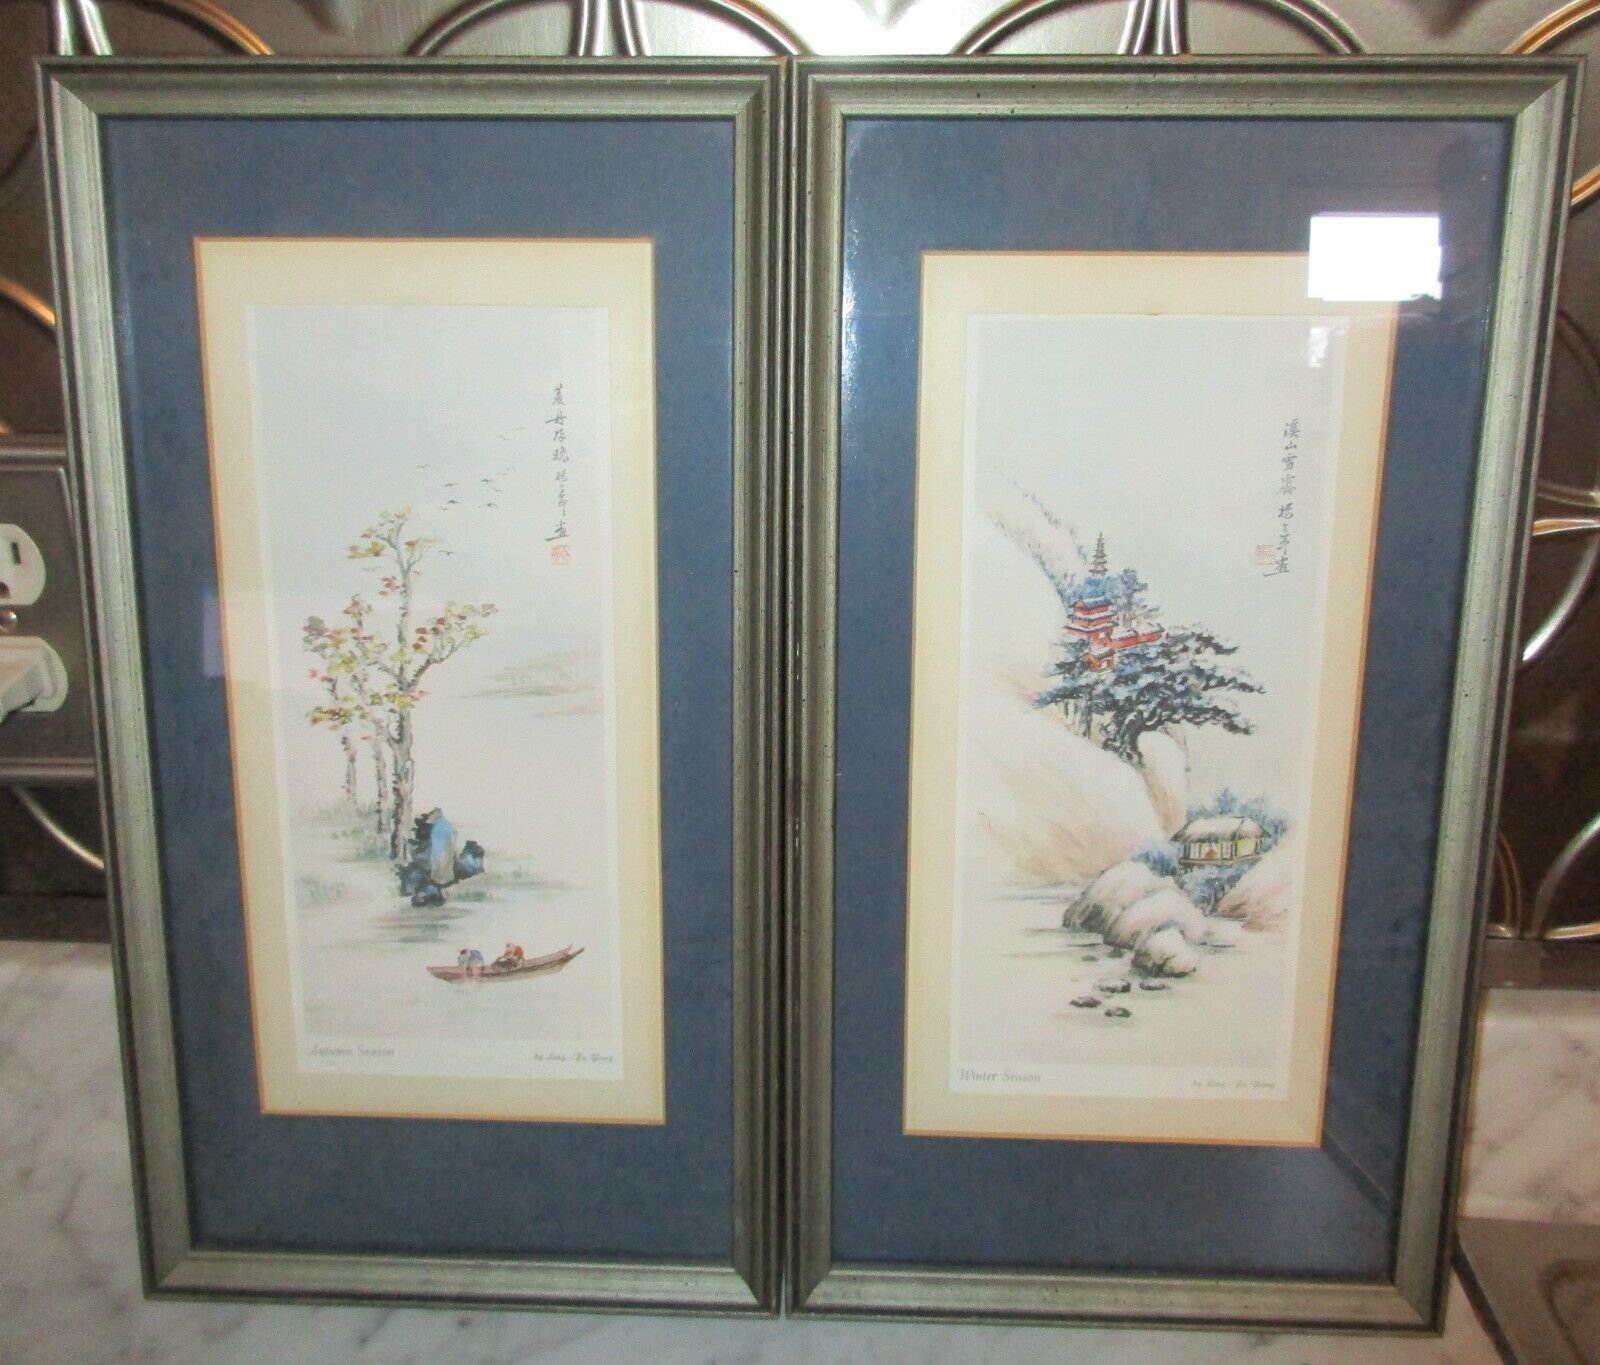 2 Vintage Ling-Fu Yang Framed Japanese Prints - Autumn & Winter